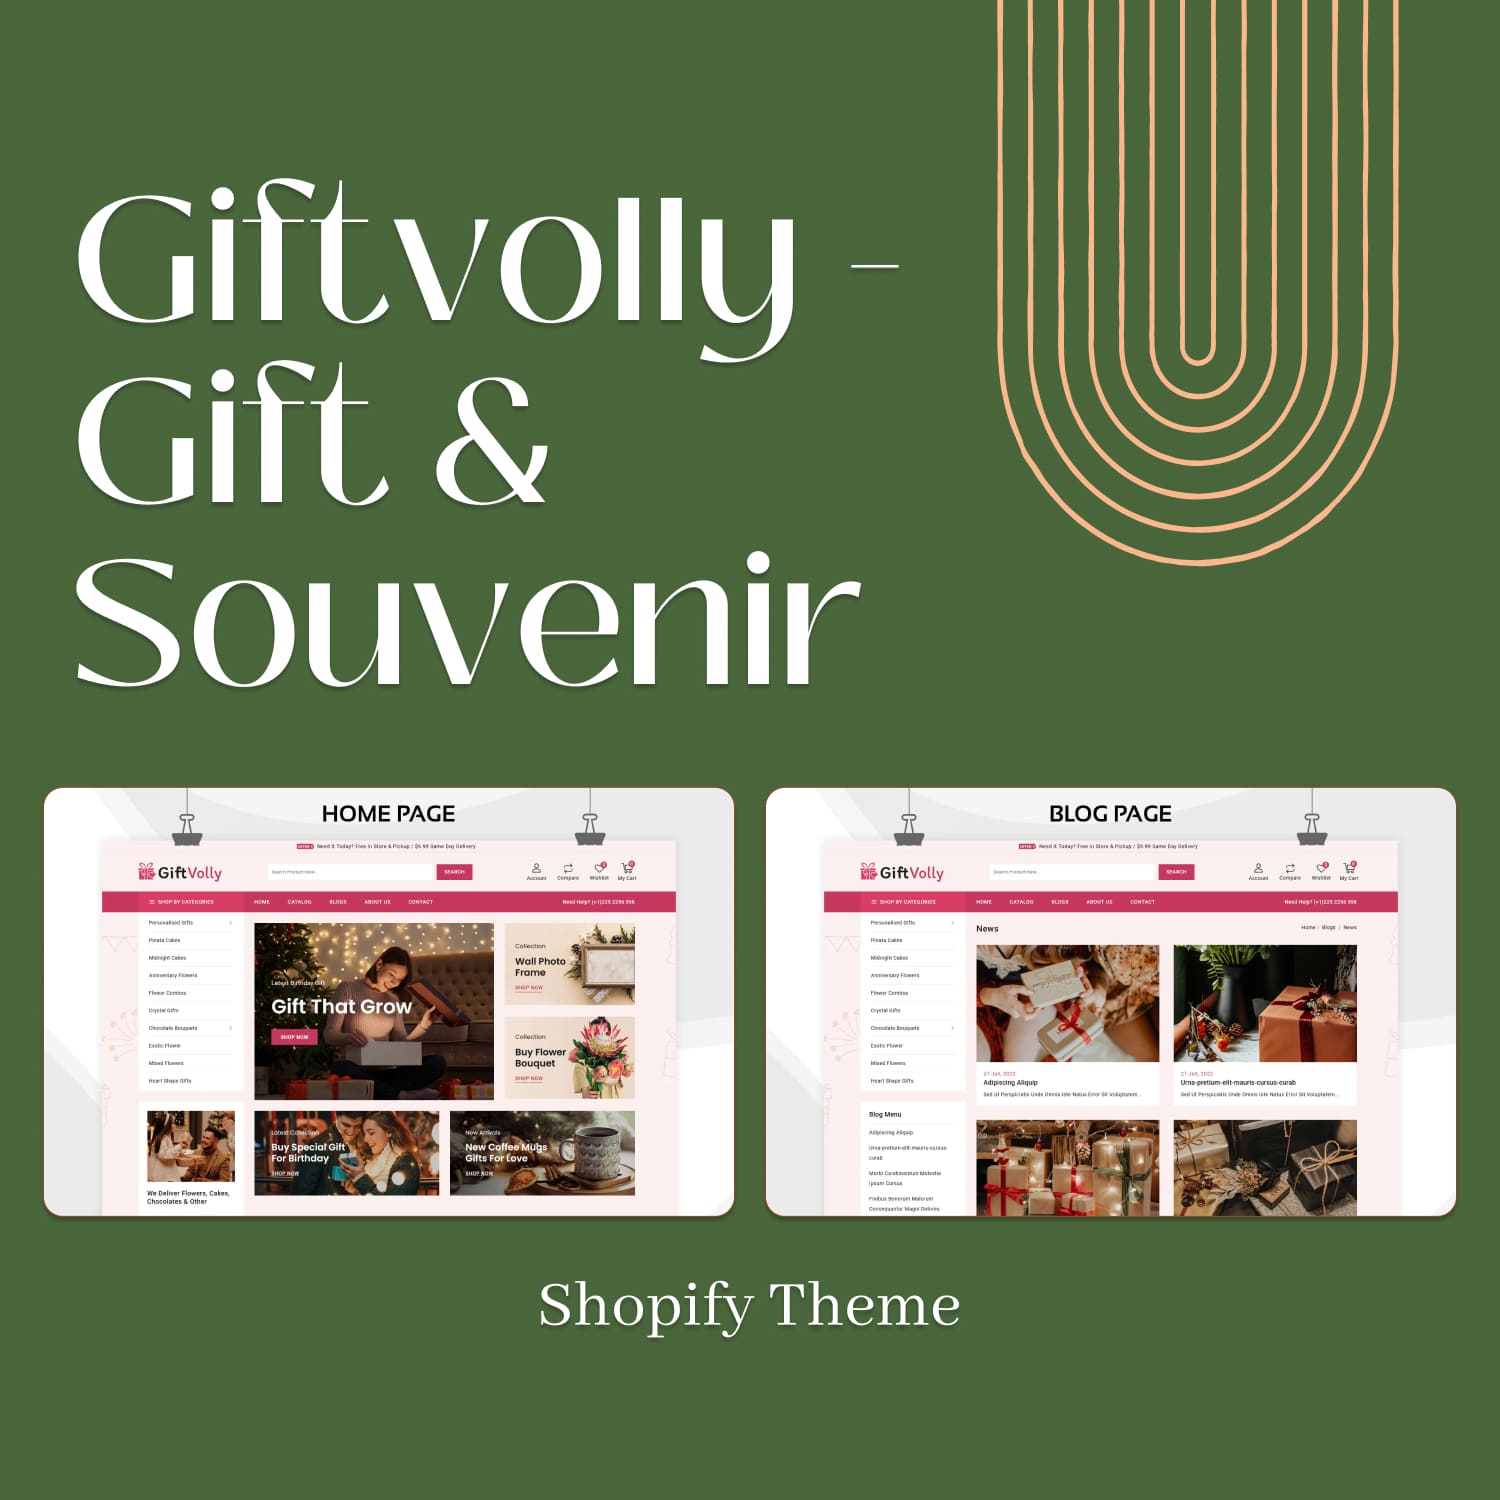 Giftvolly - Gift & Souvenir Shopify Theme.